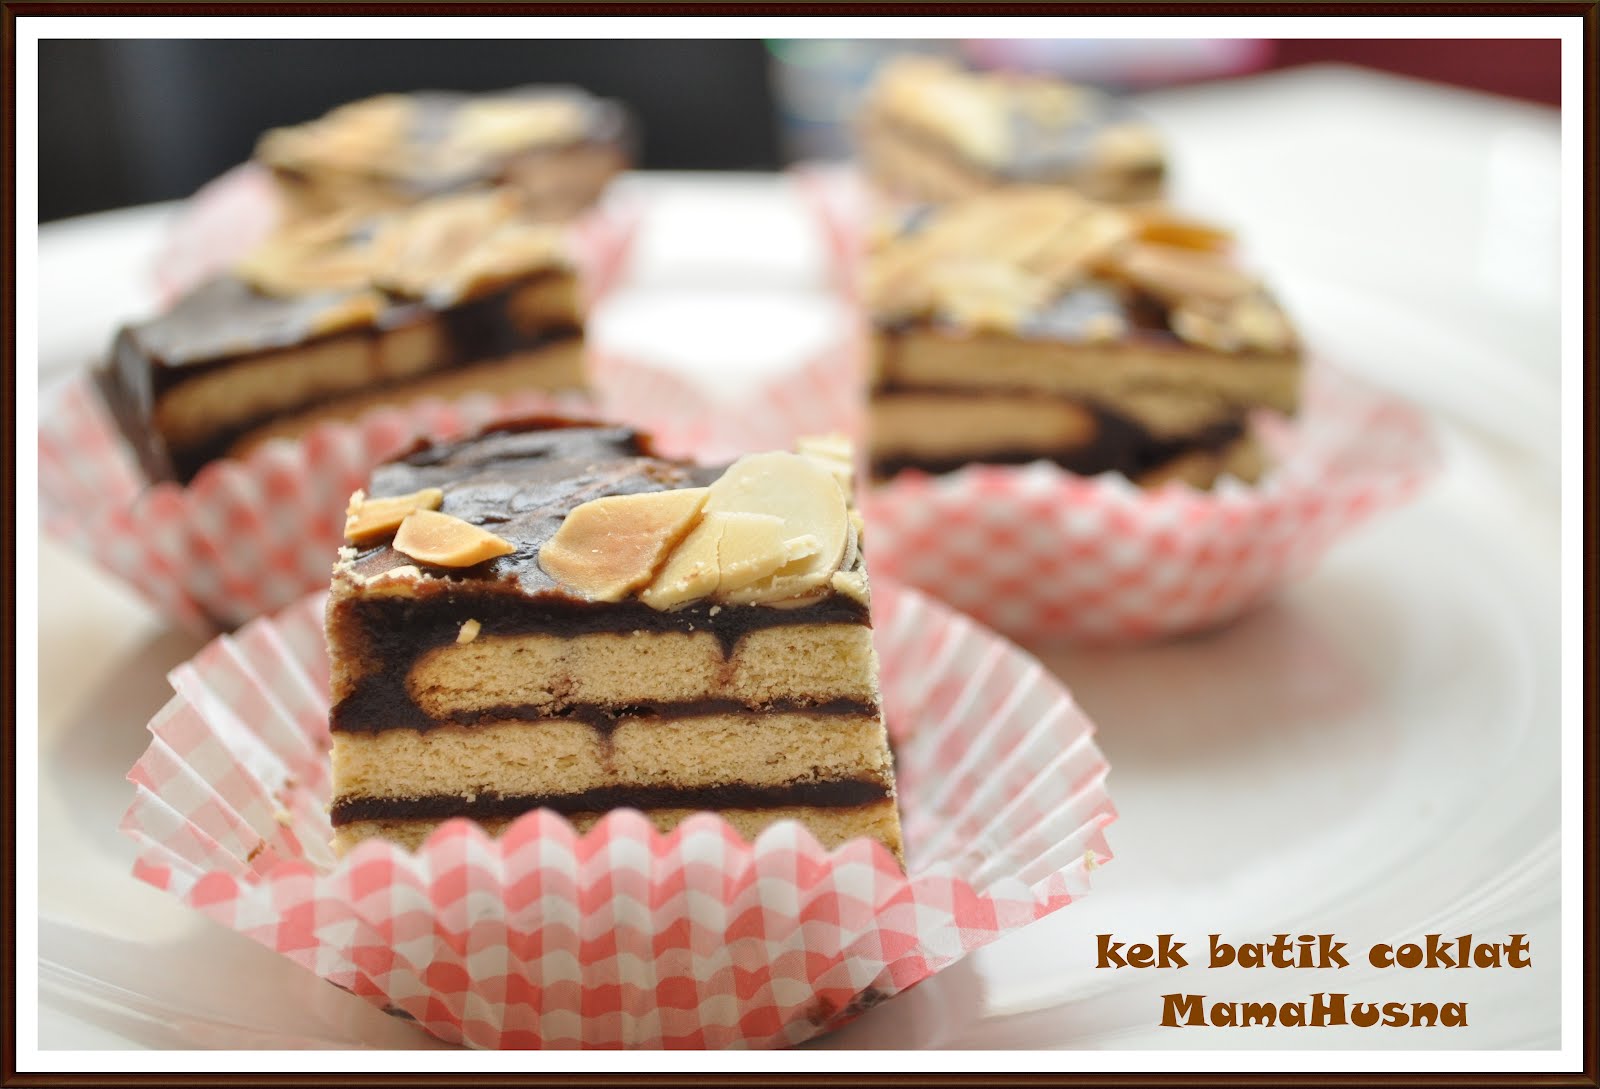 MamaHusna Chocolate Resepi kek batik coklat